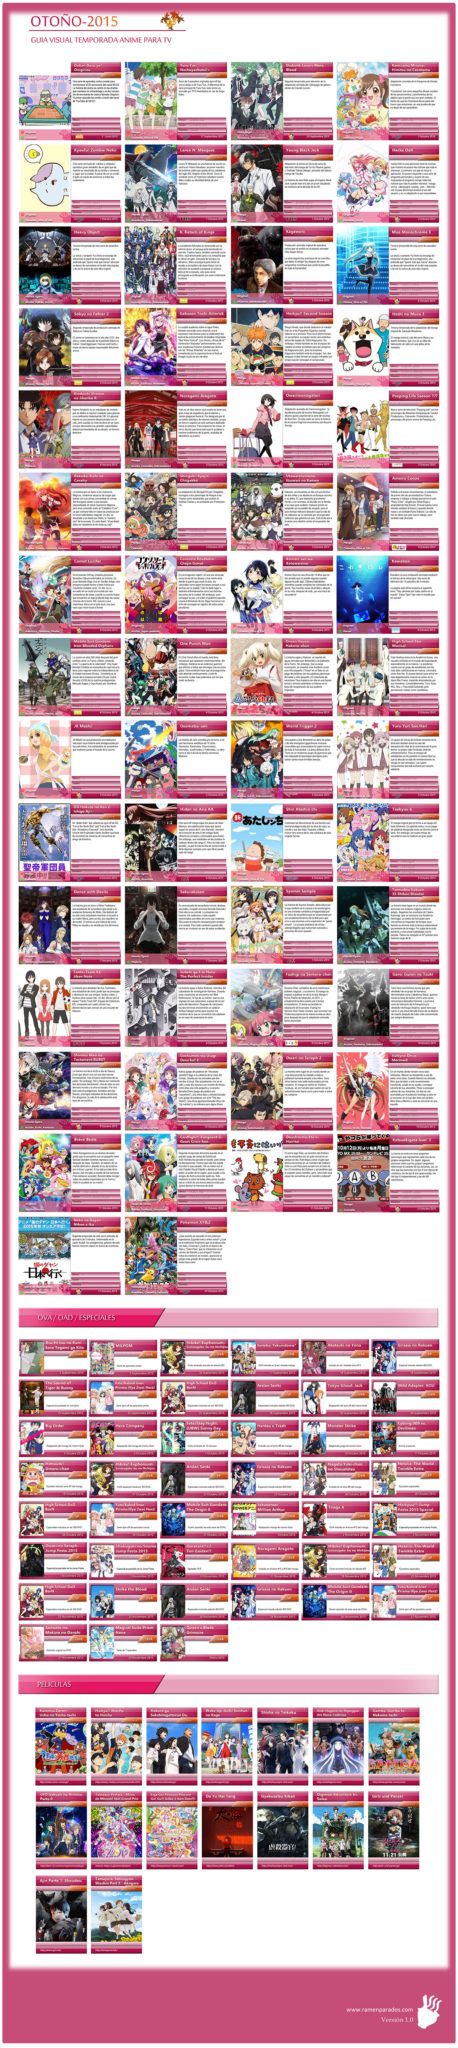 Guía visual de temporada de anime otoño 2015